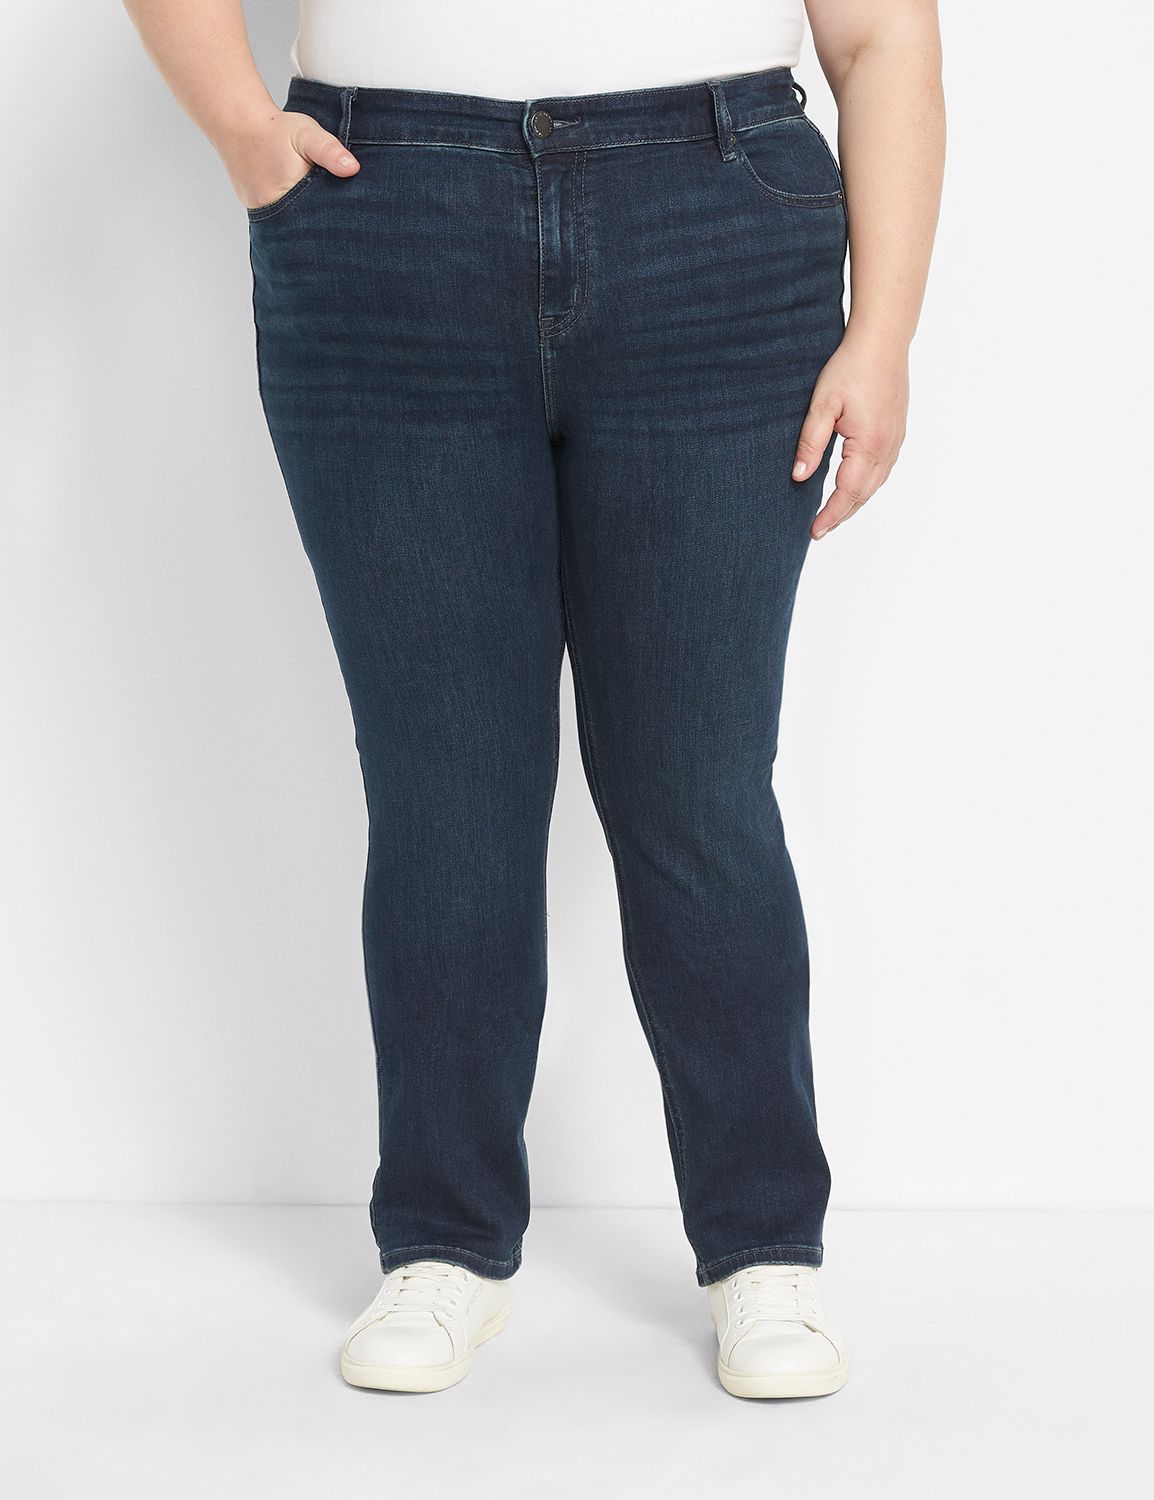 seven jeans plus size lane bryant